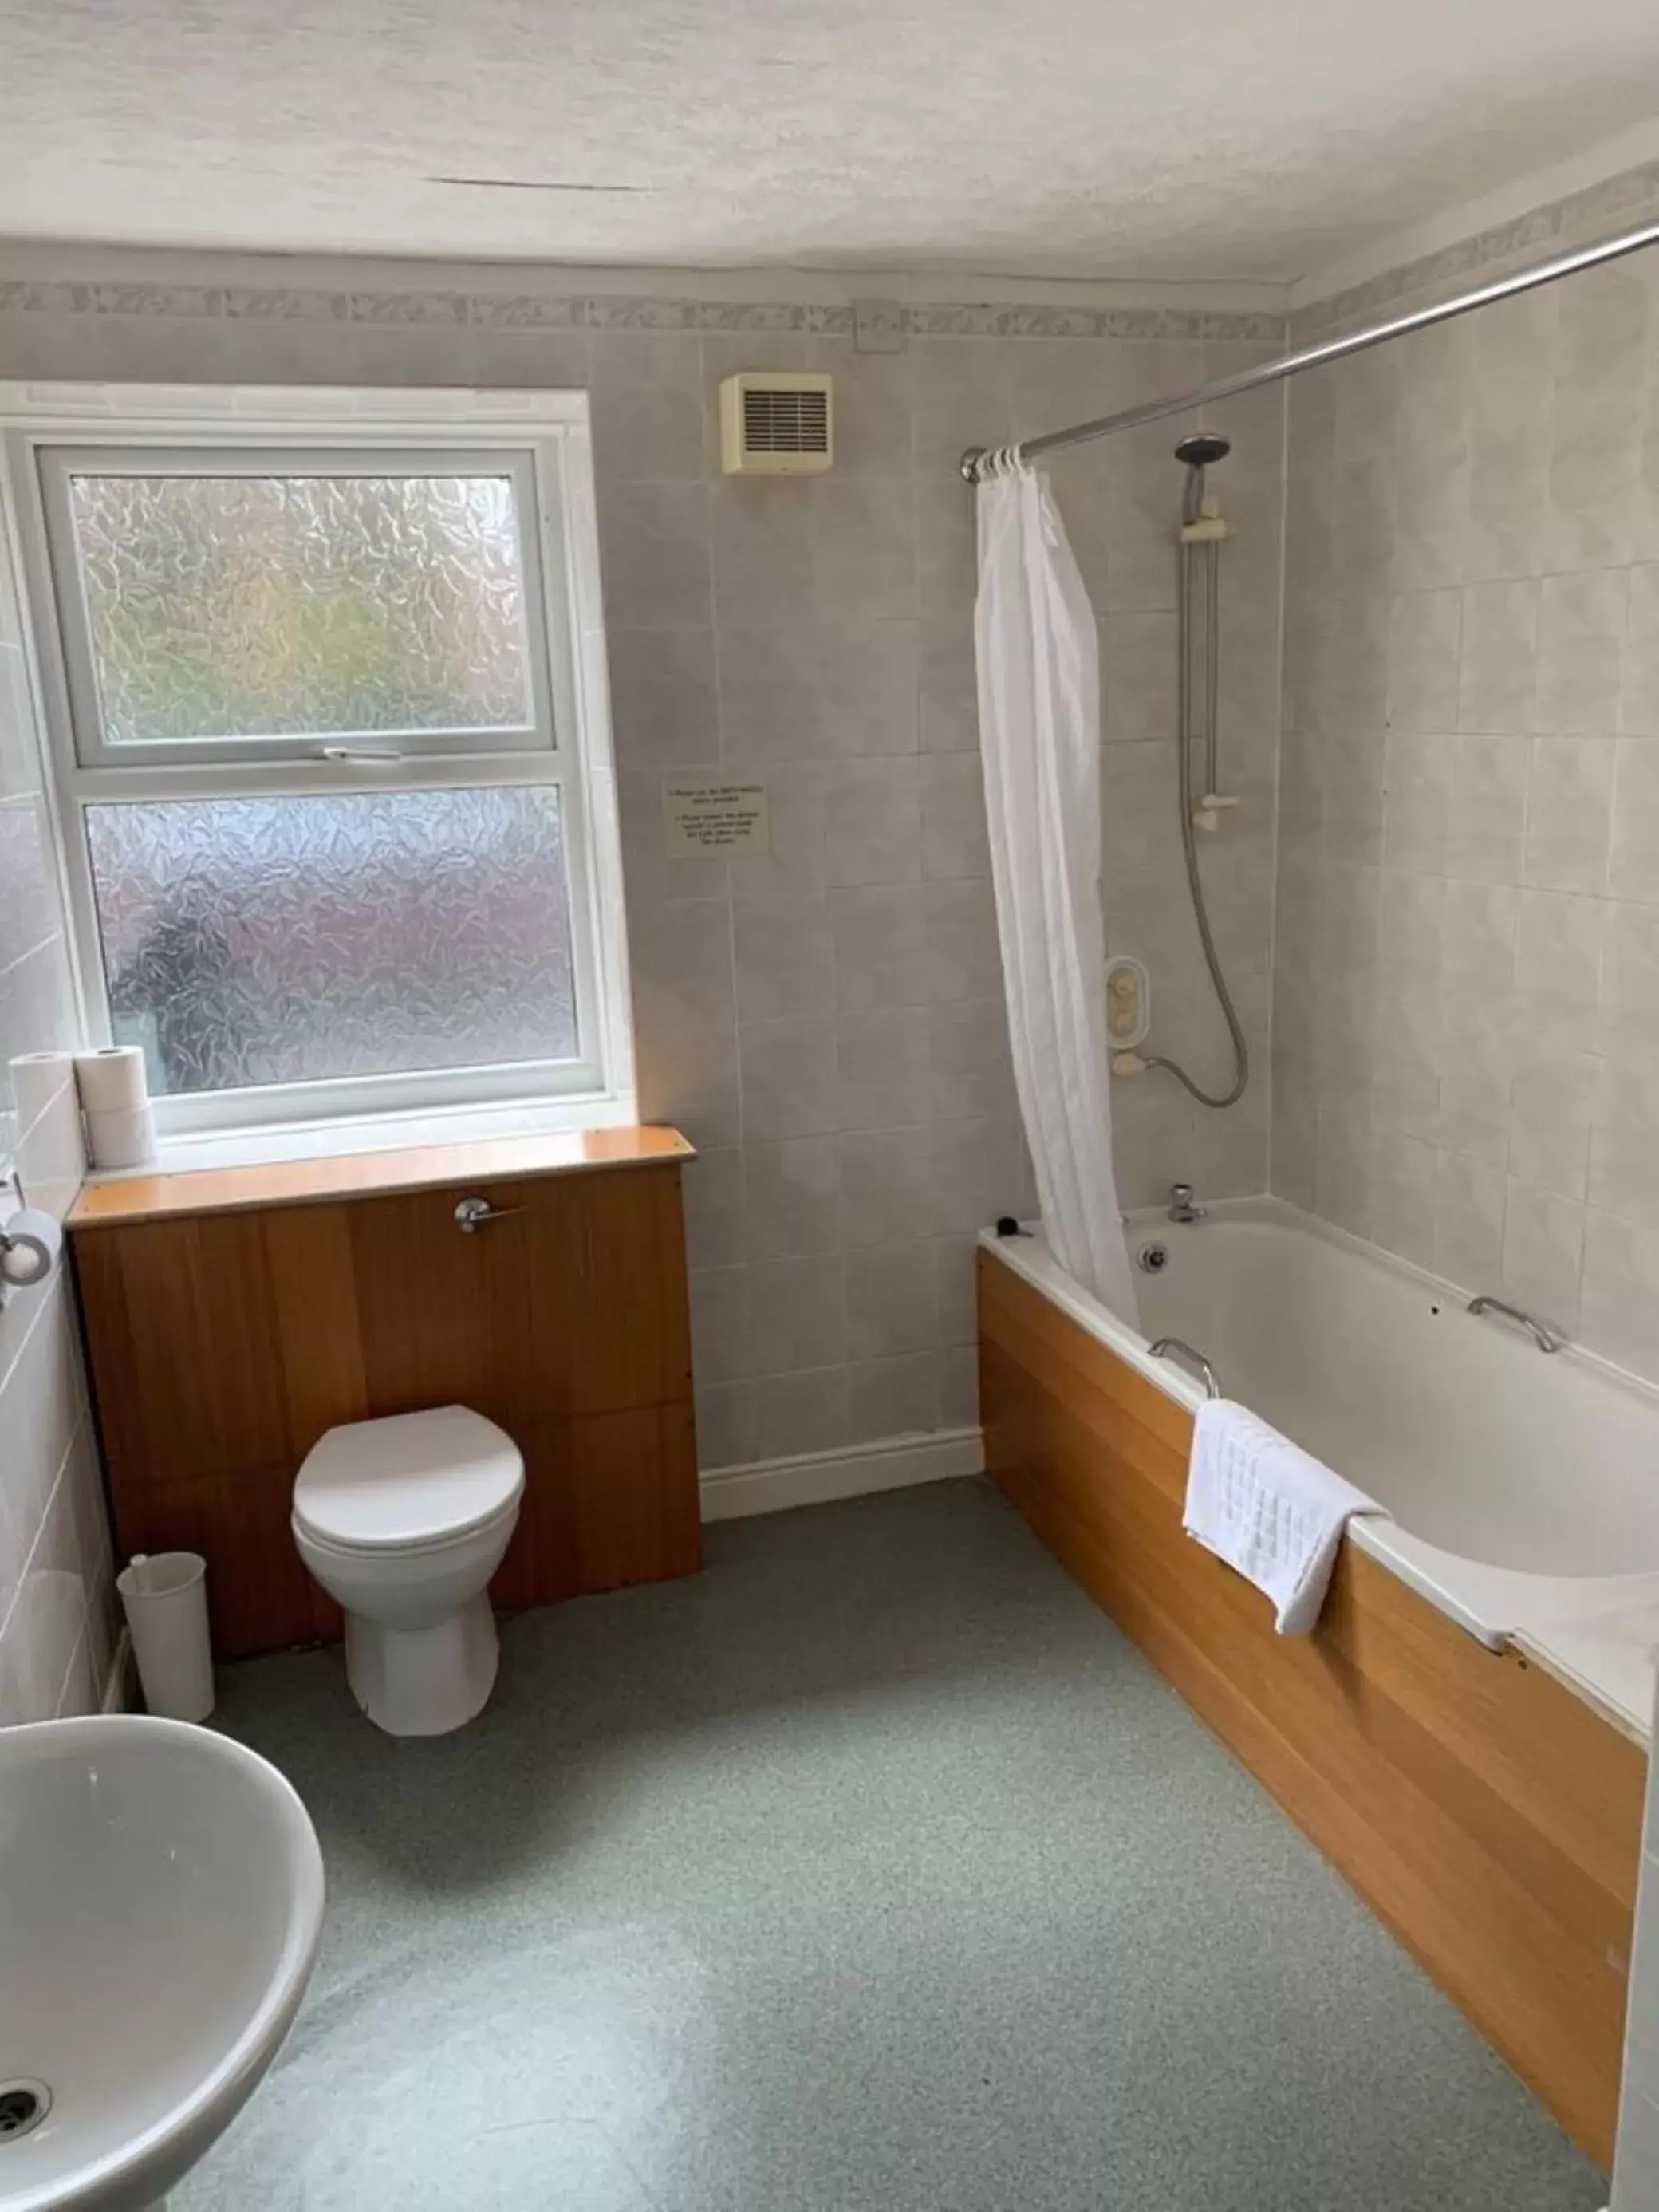 Bedroom, Bathroom in Waterford Lodge Hotel